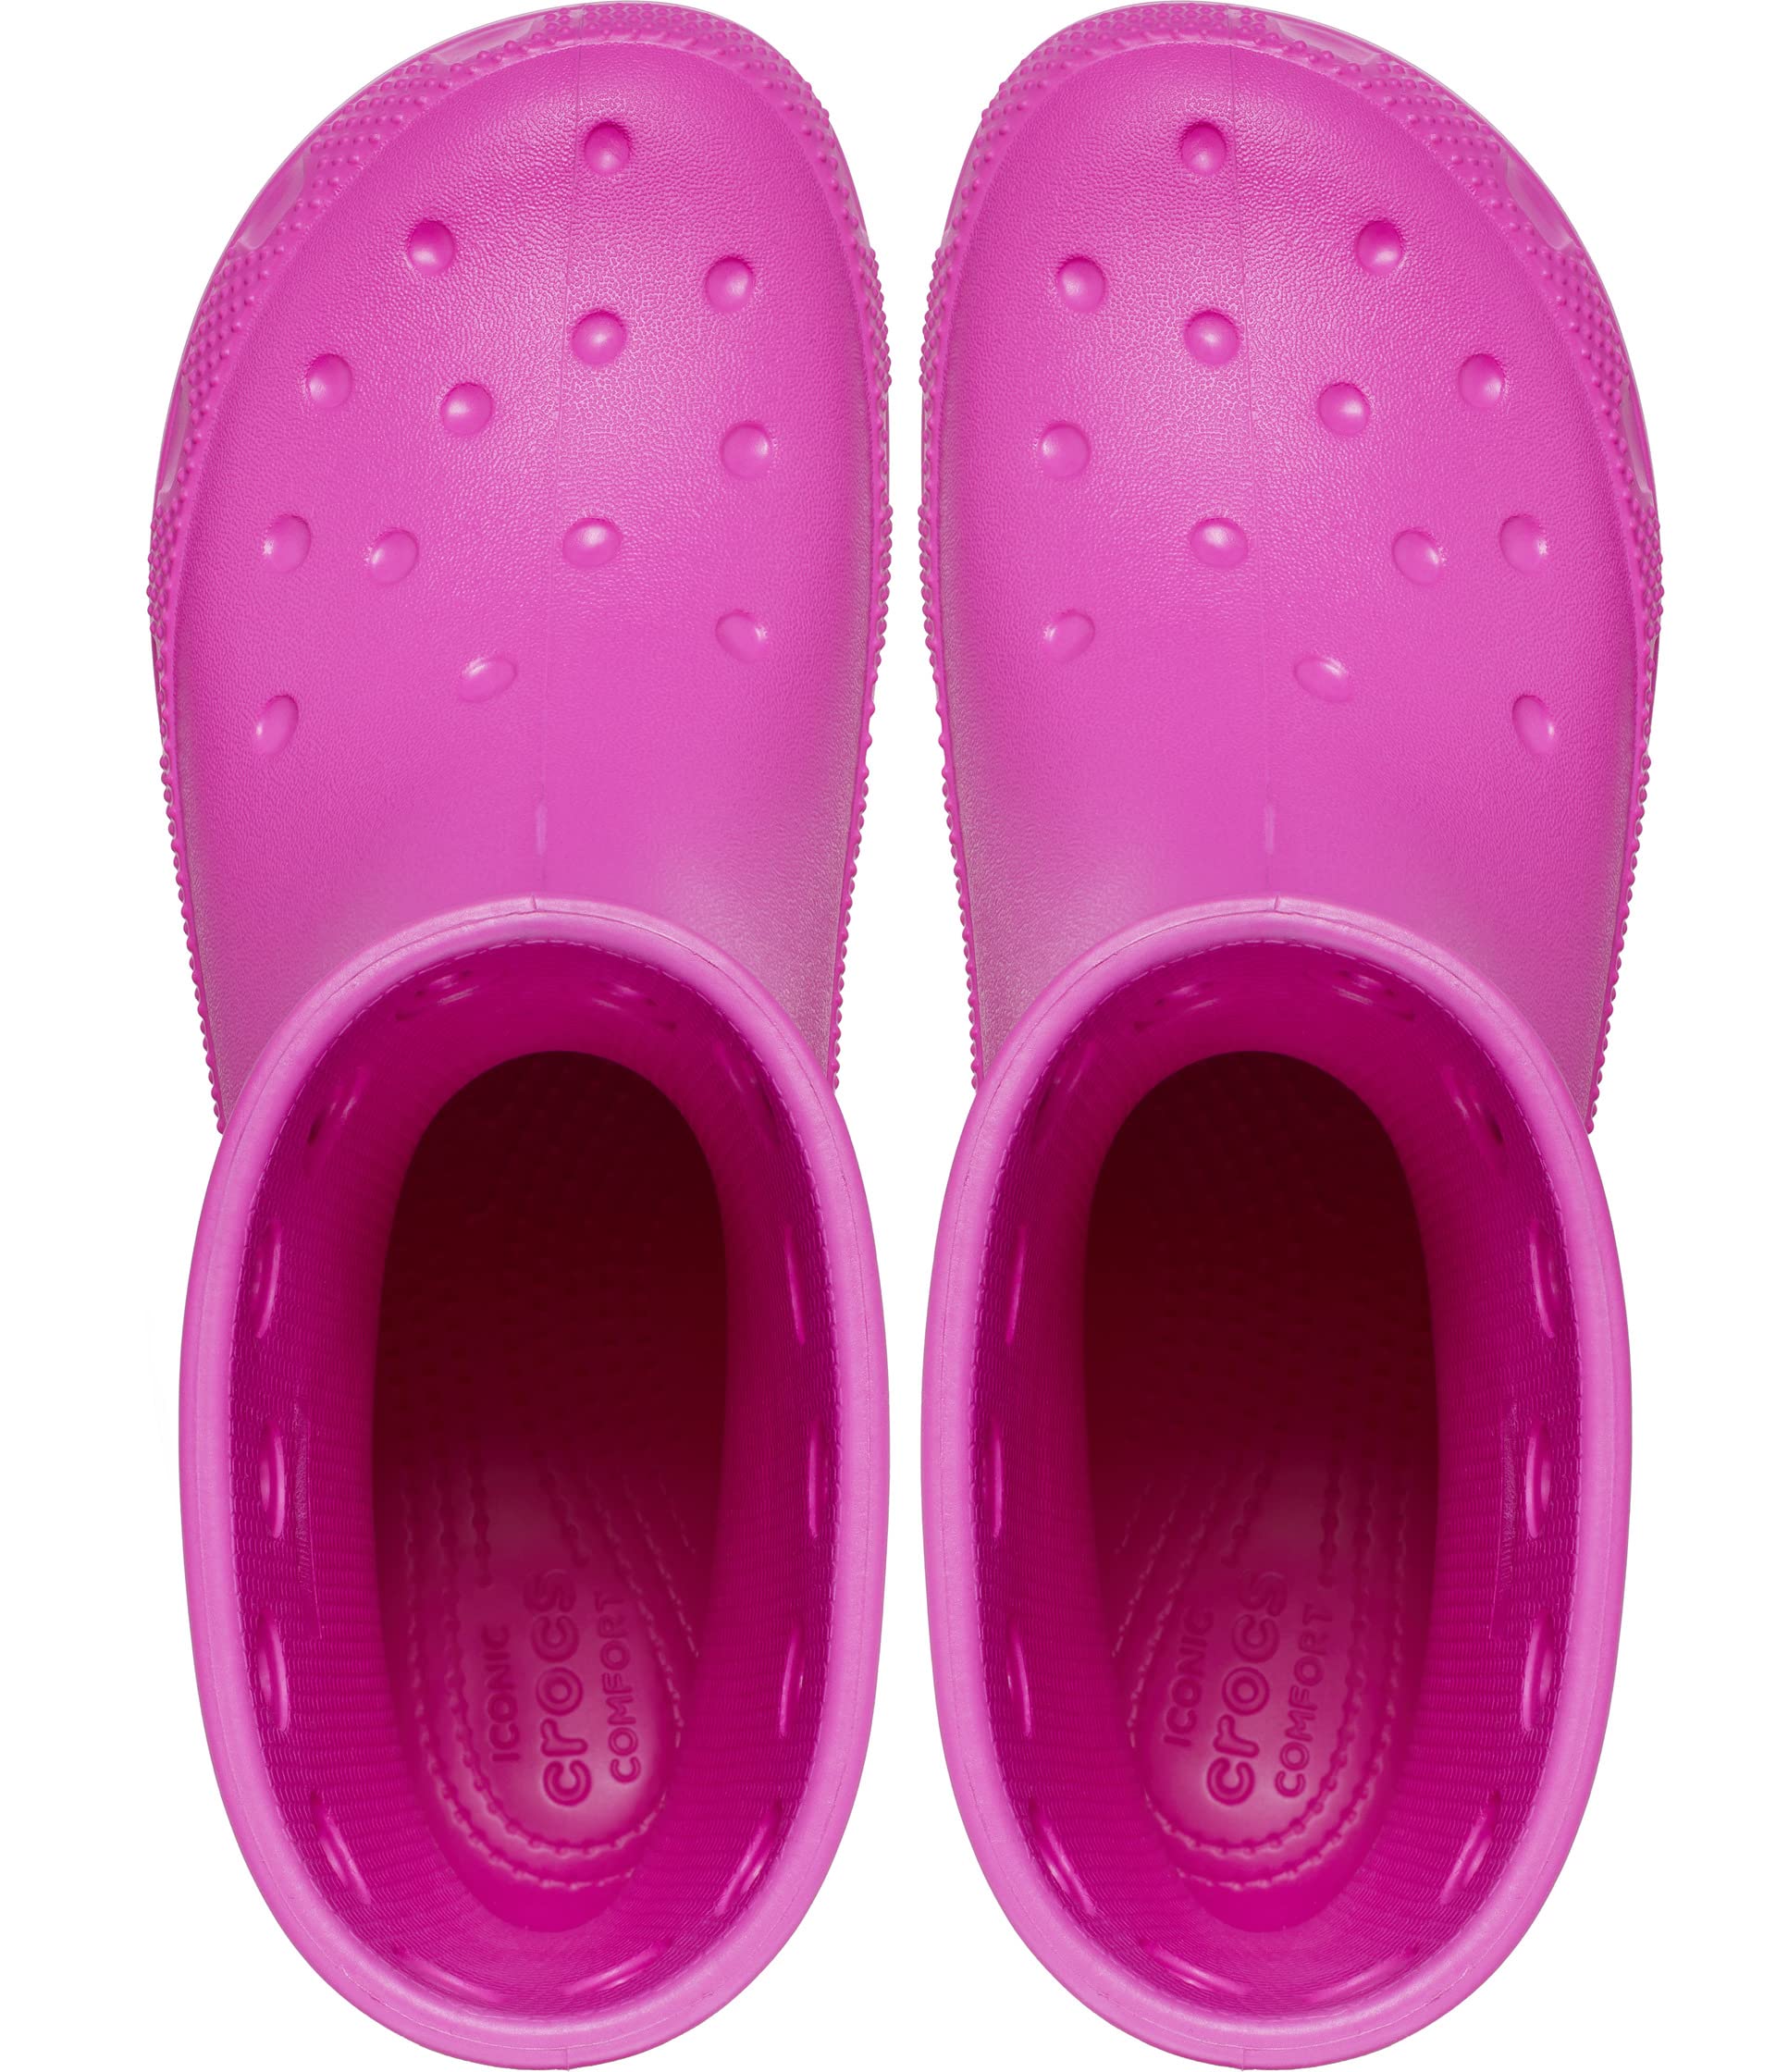 Ботинки Crocs Kids Classic Rain Boot (Little Kid/Big Kid) ботинки classic rain boot crocs сок